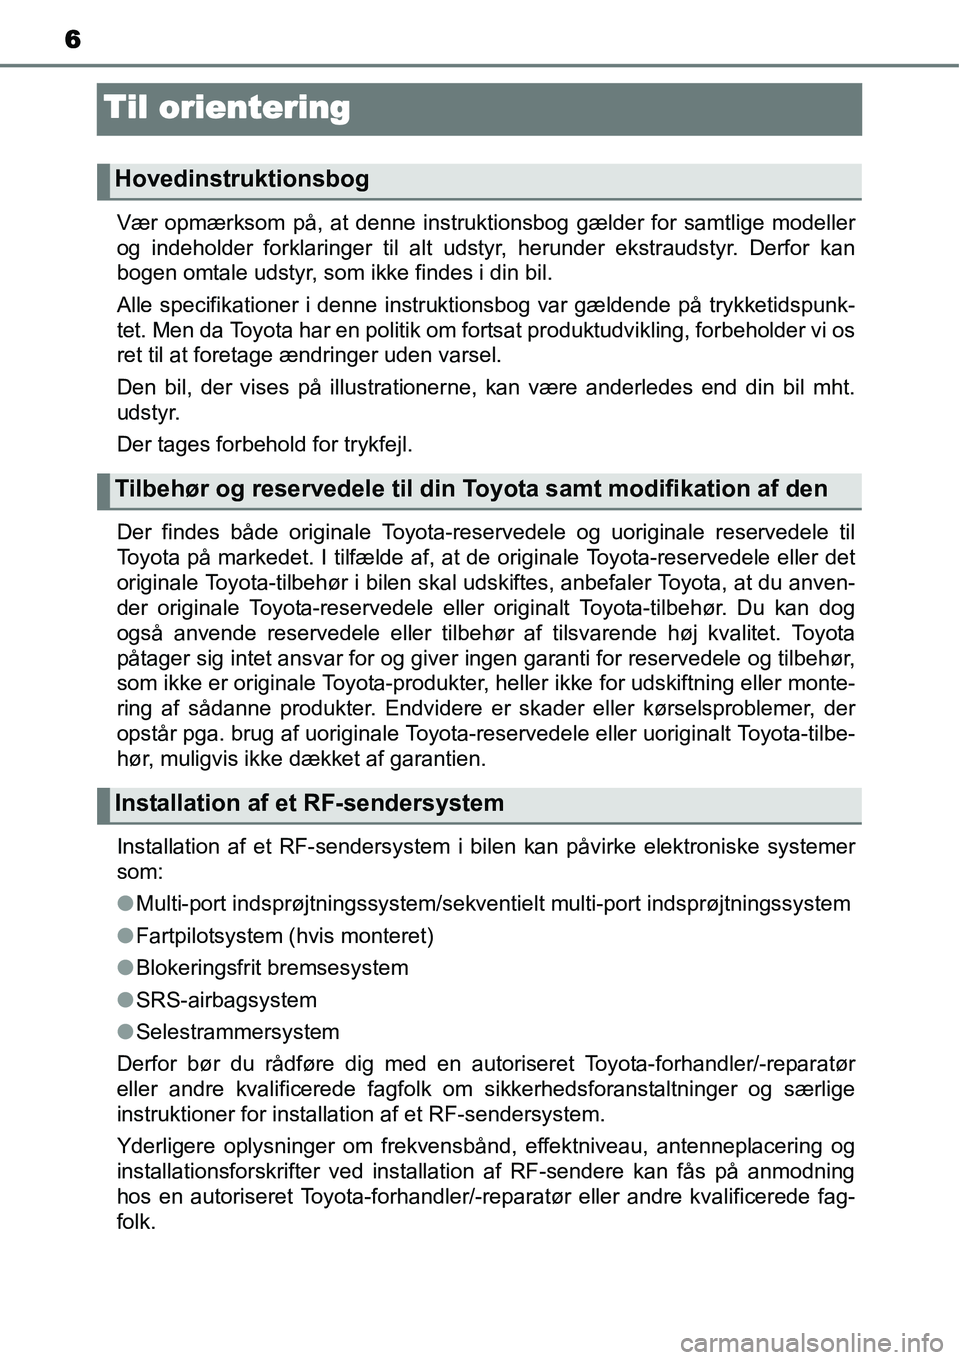 TOYOTA YARIS 2015  Brugsanvisning (in Danish) 6
Til orientering
Vær opmærksom på, at denne instruktionsbog gælder for samtlige modeller
og indeholder forklaringer til alt udstyr, herunder ekstraudstyr. Derfor kan
bogen omtale udstyr, som ikke